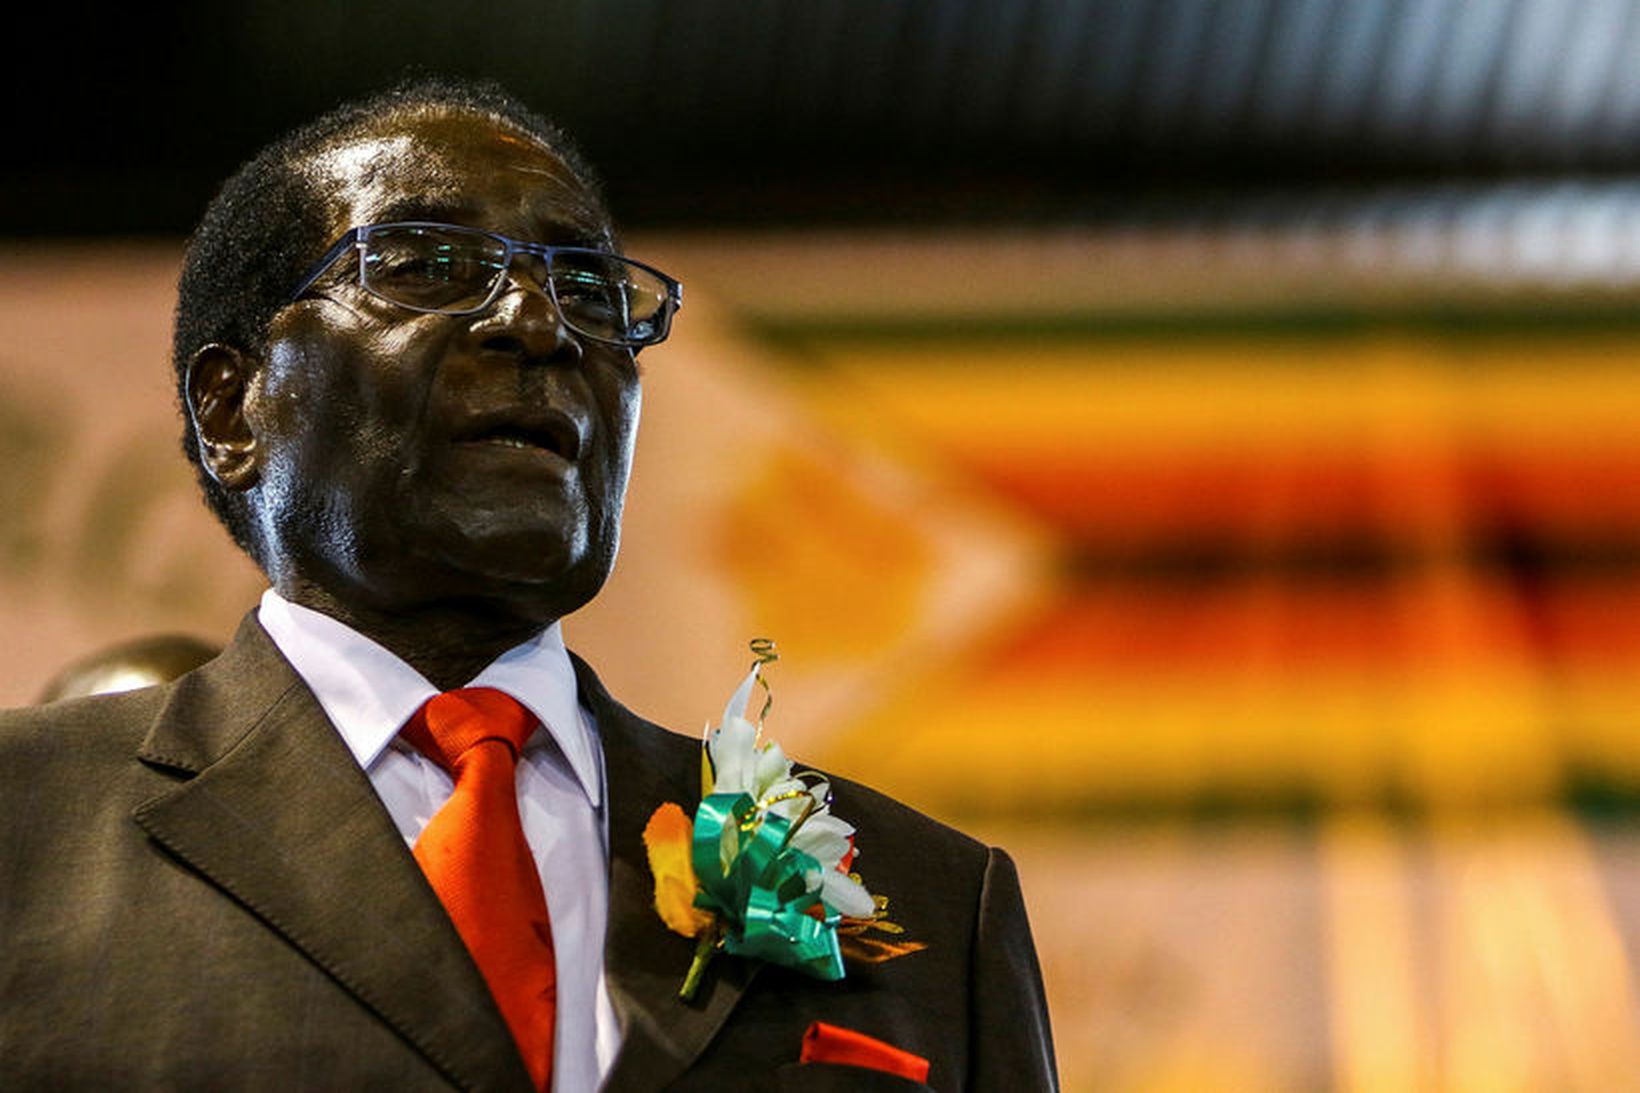 Robert Mugabe, elsti þjóðhöfðingi heims.